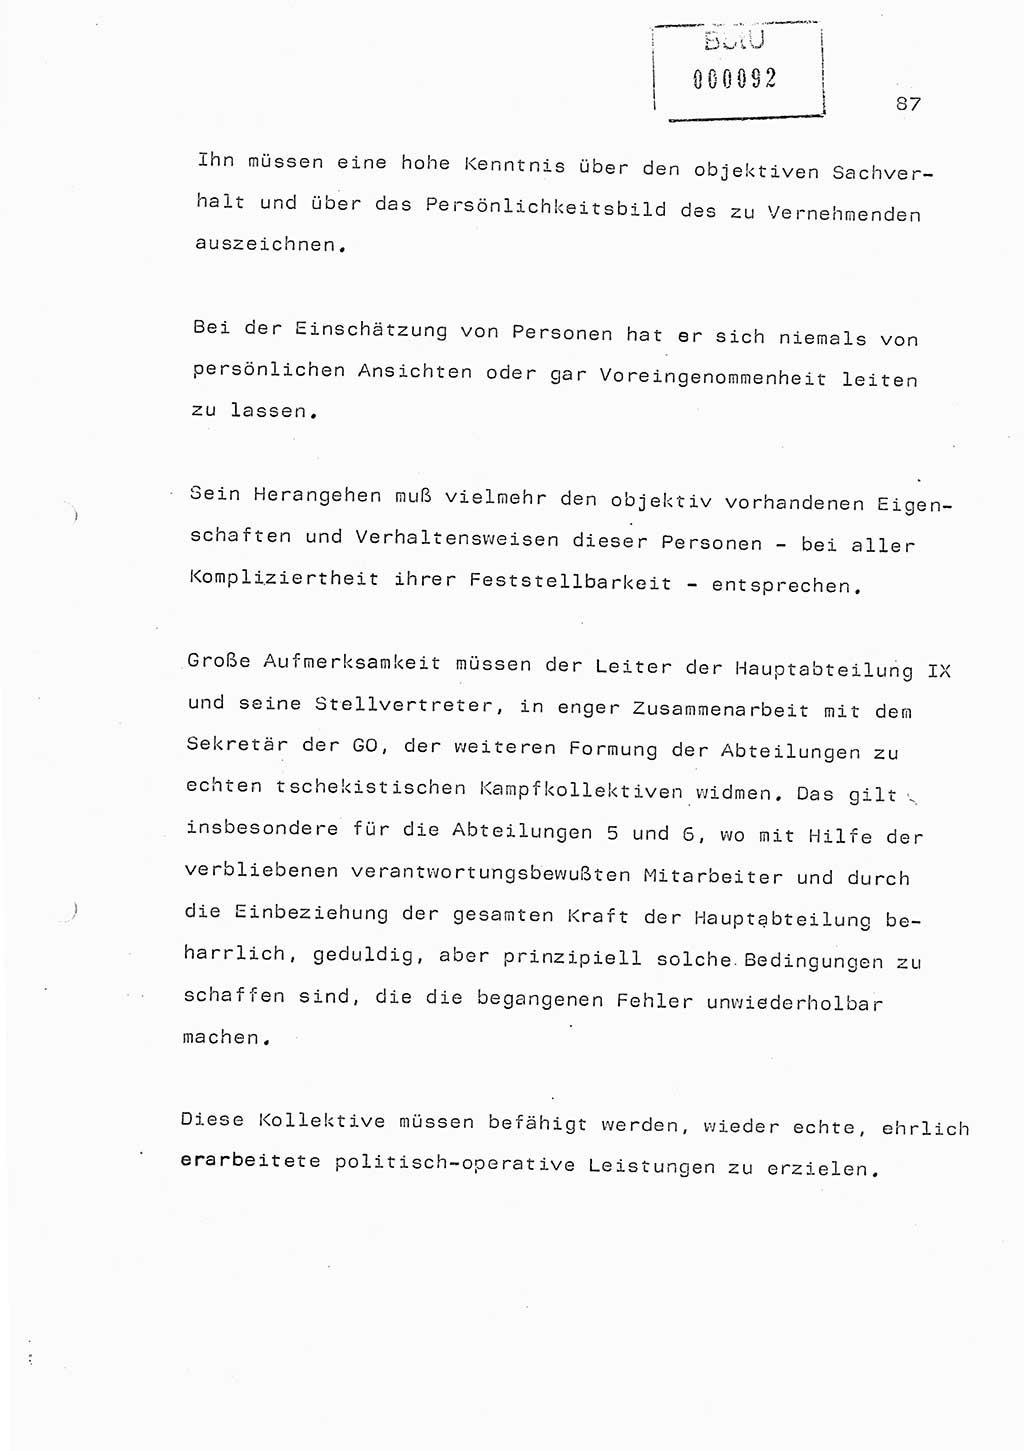 Referat (Generaloberst Erich Mielke) auf der Zentralen Dienstkonferenz am 24.5.1979 [Ministerium für Staatssicherheit (MfS), Deutsche Demokratische Republik (DDR), Der Minister], Berlin 1979, Seite 87 (Ref. DK DDR MfS Min. /79 1979, S. 87)